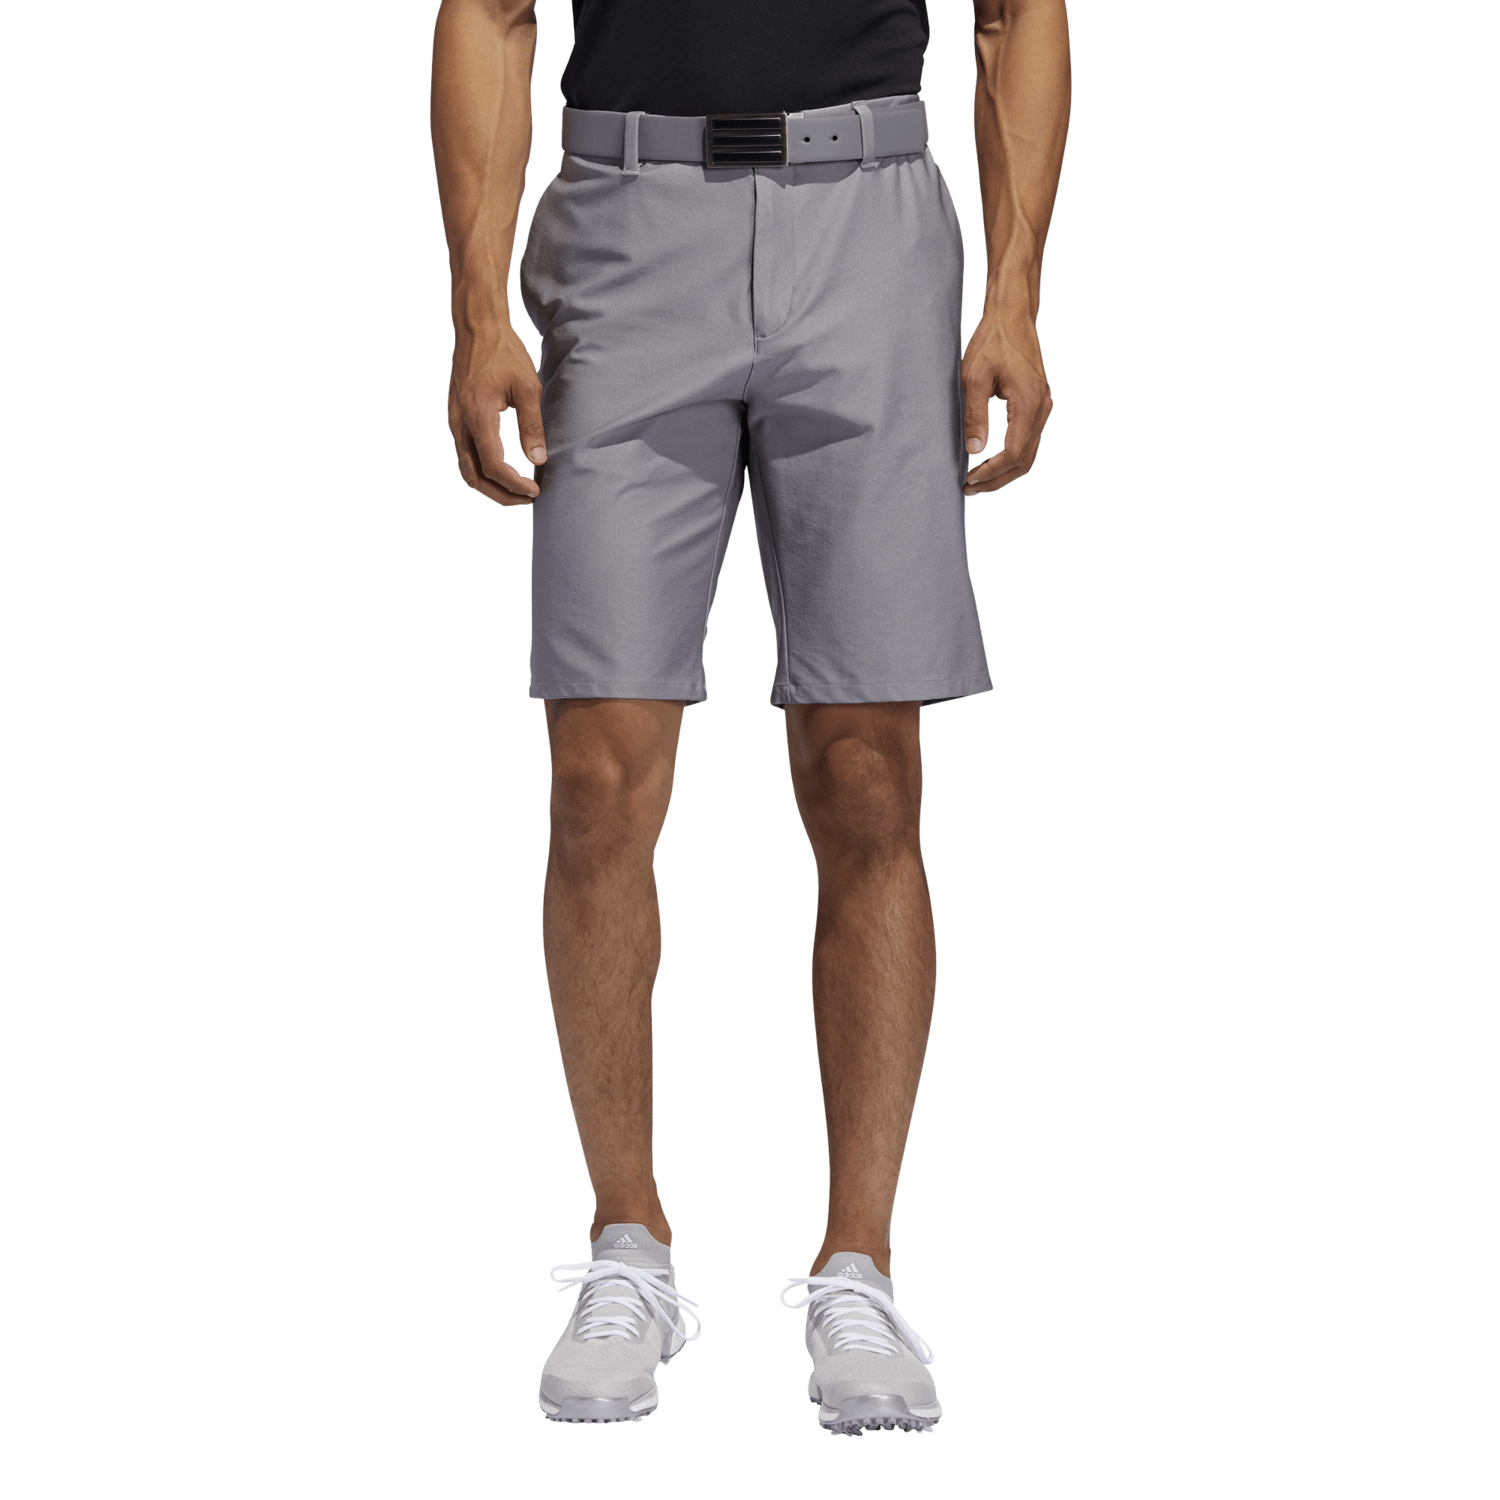 adidas 3 stripe golf shorts